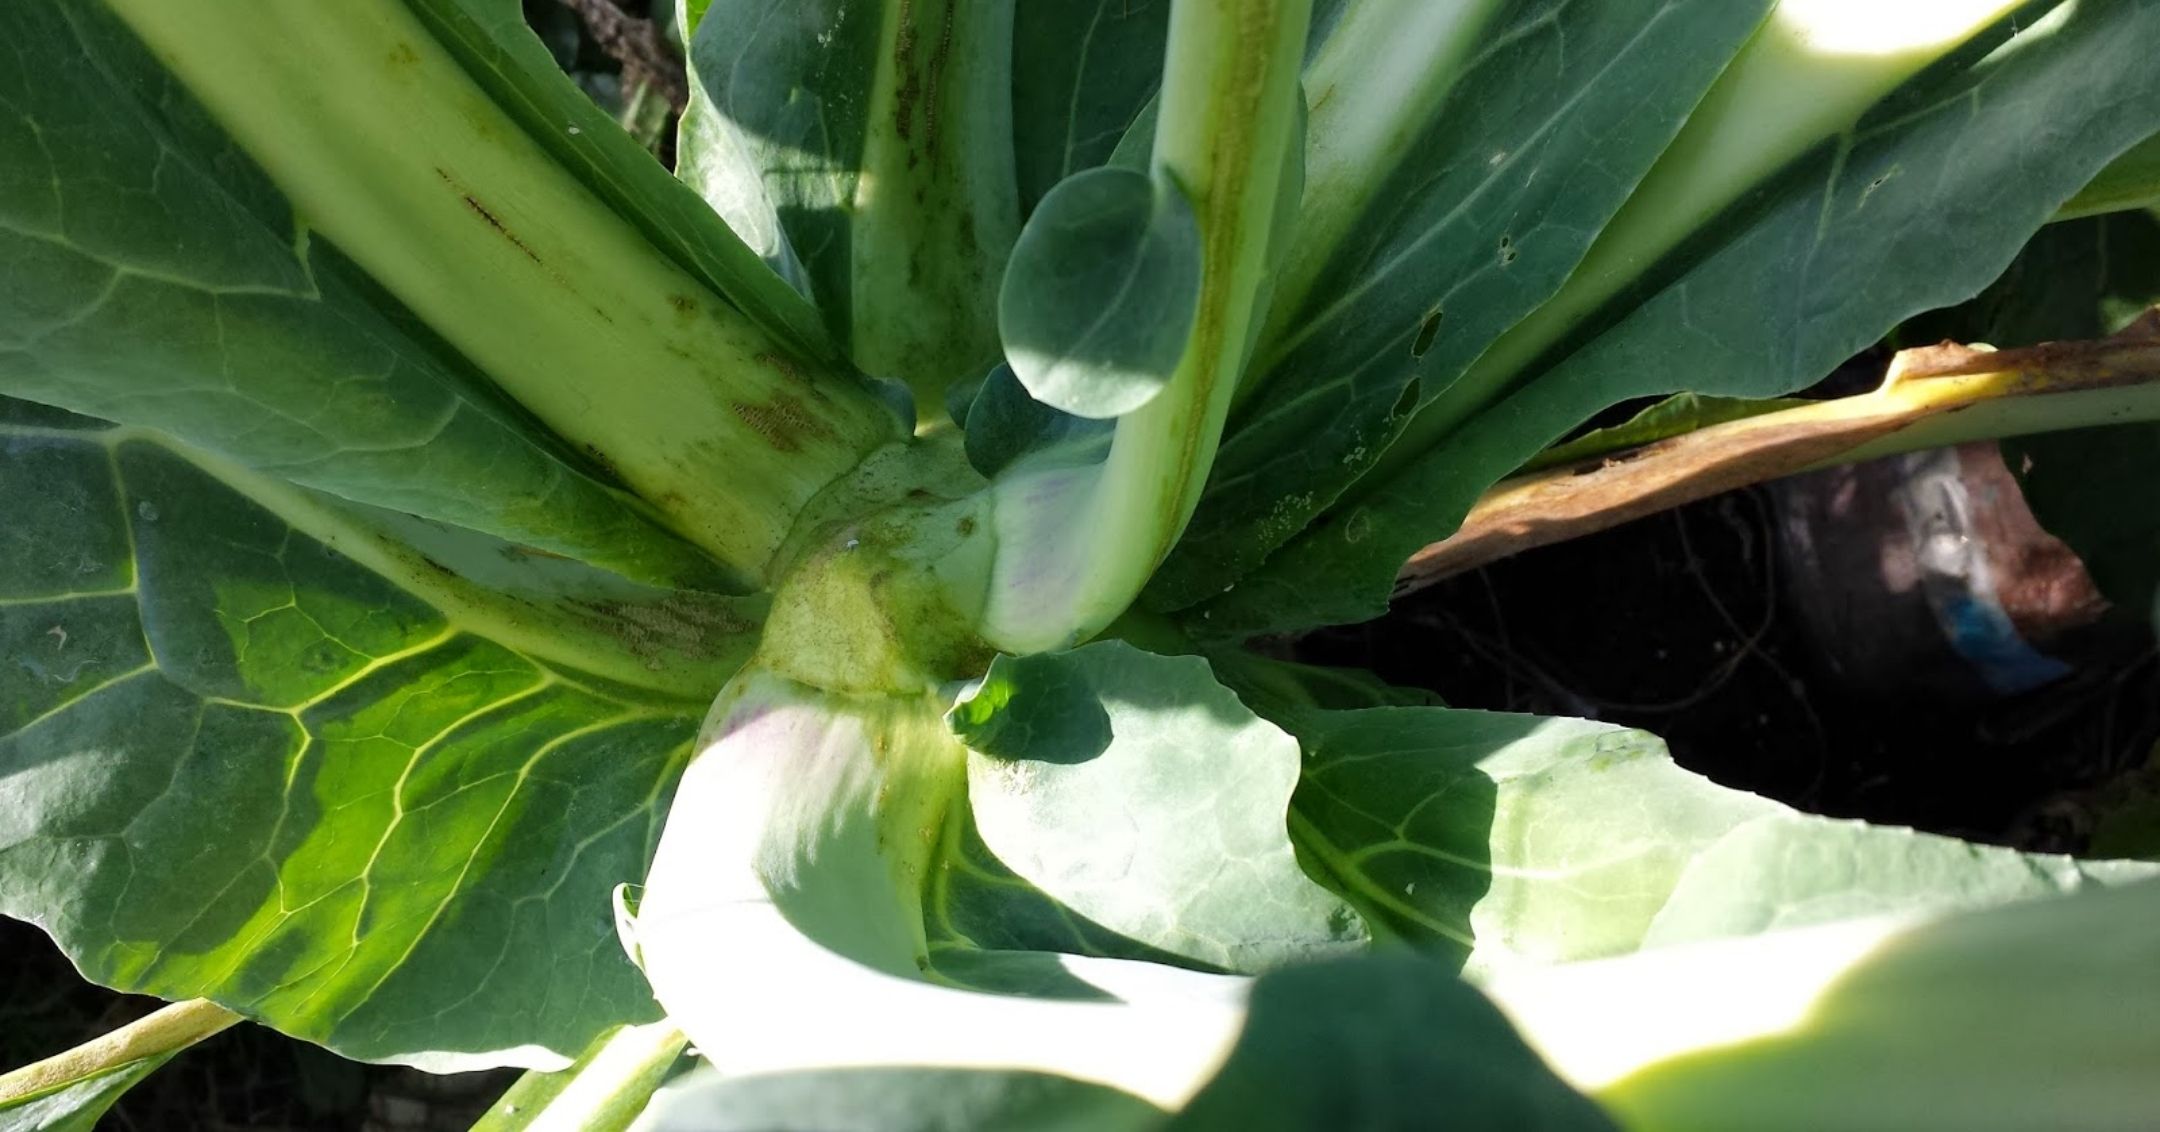 Blind cauliflower plant